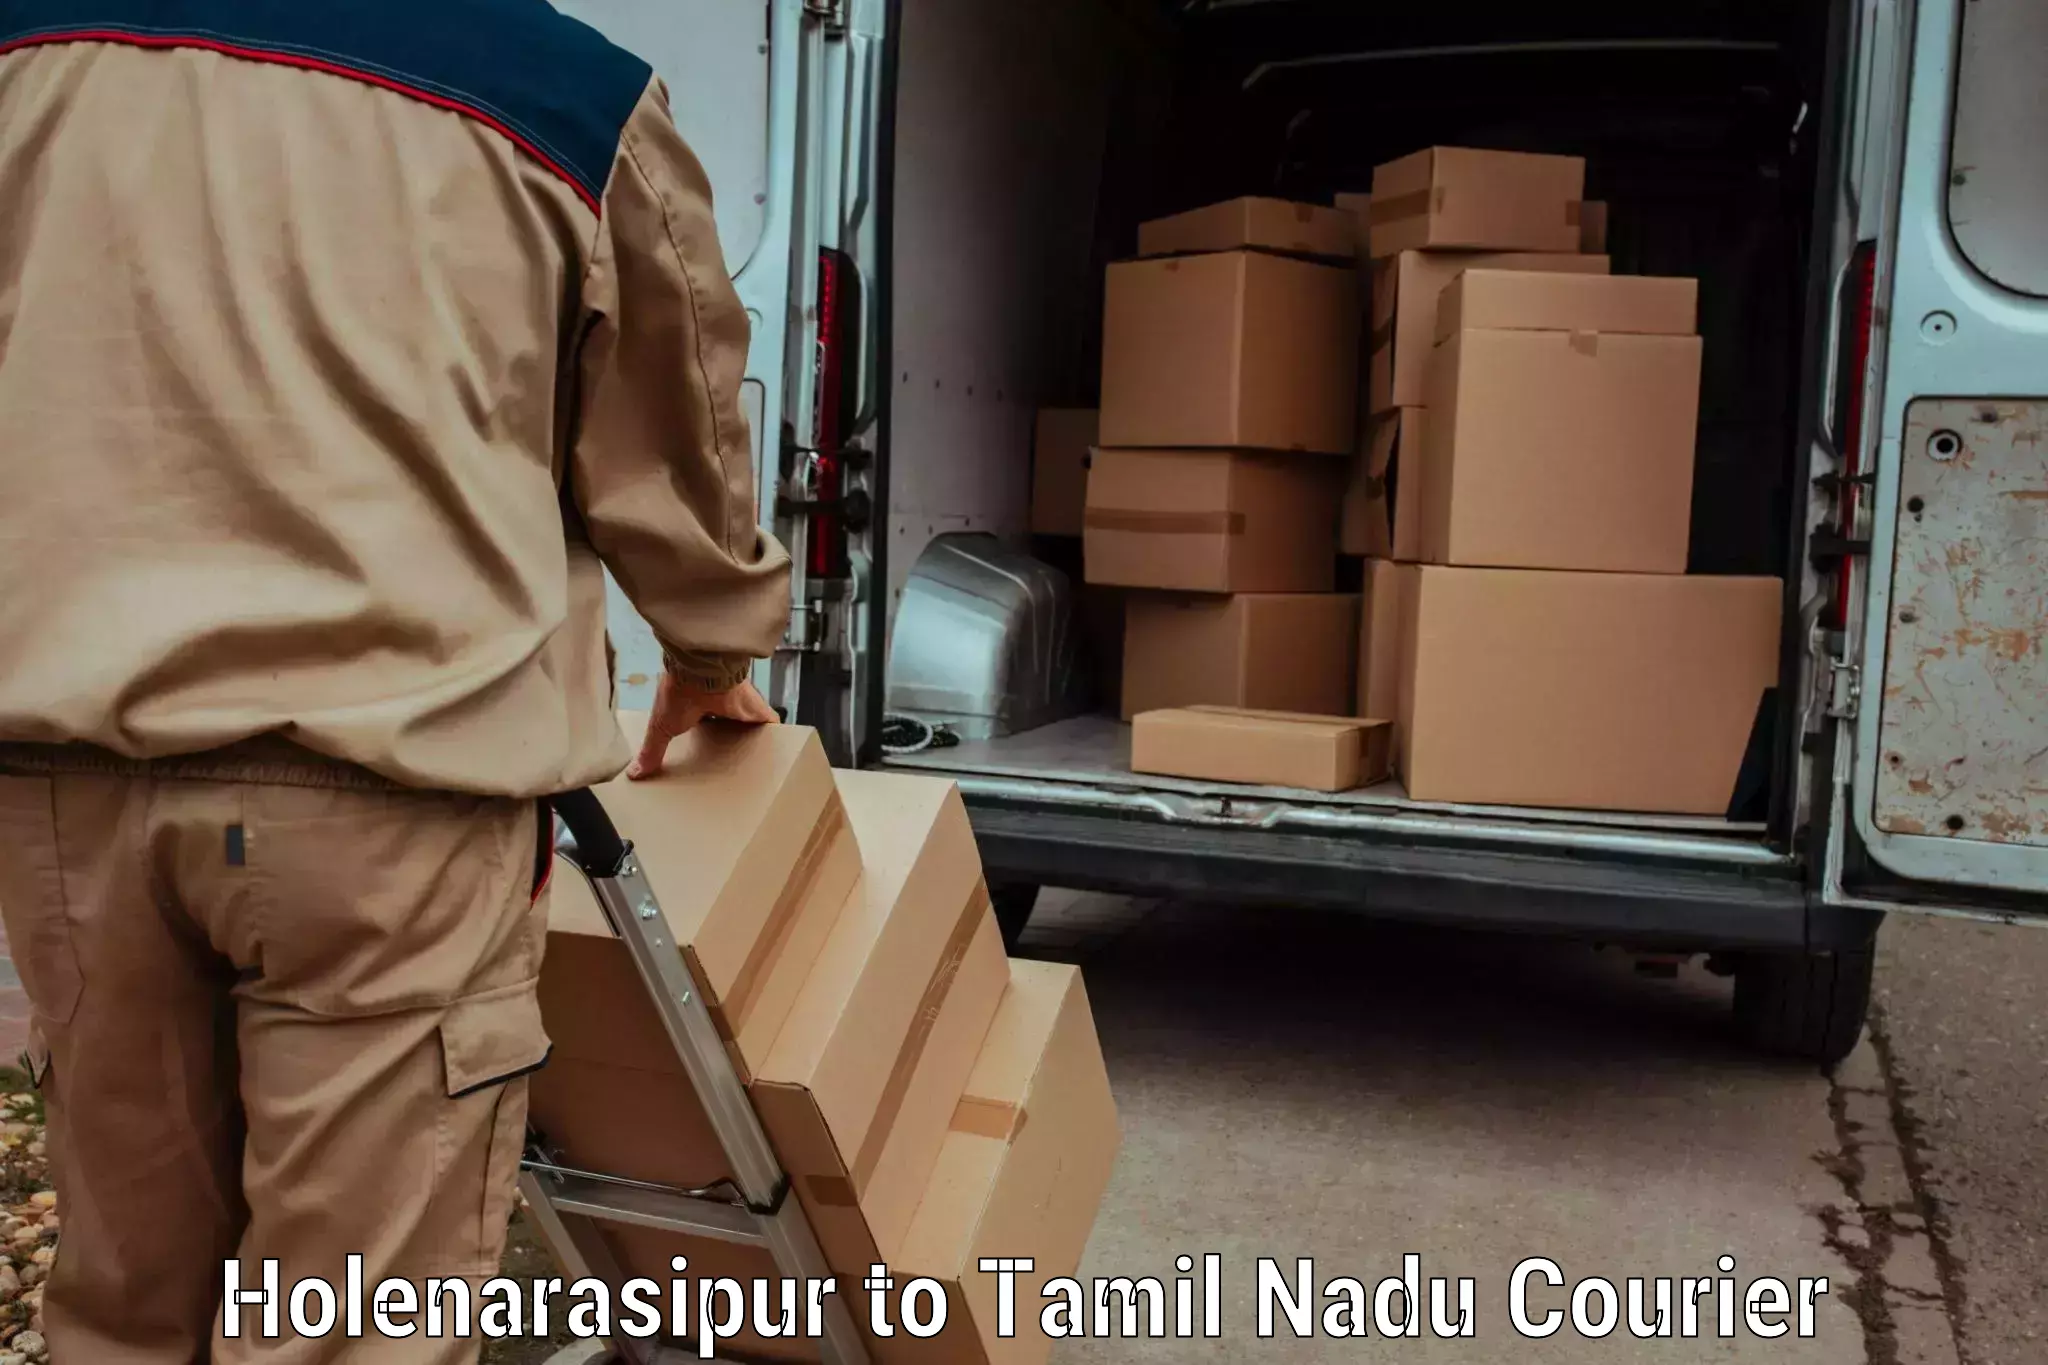 Special handling courier Holenarasipur to Virudhunagar